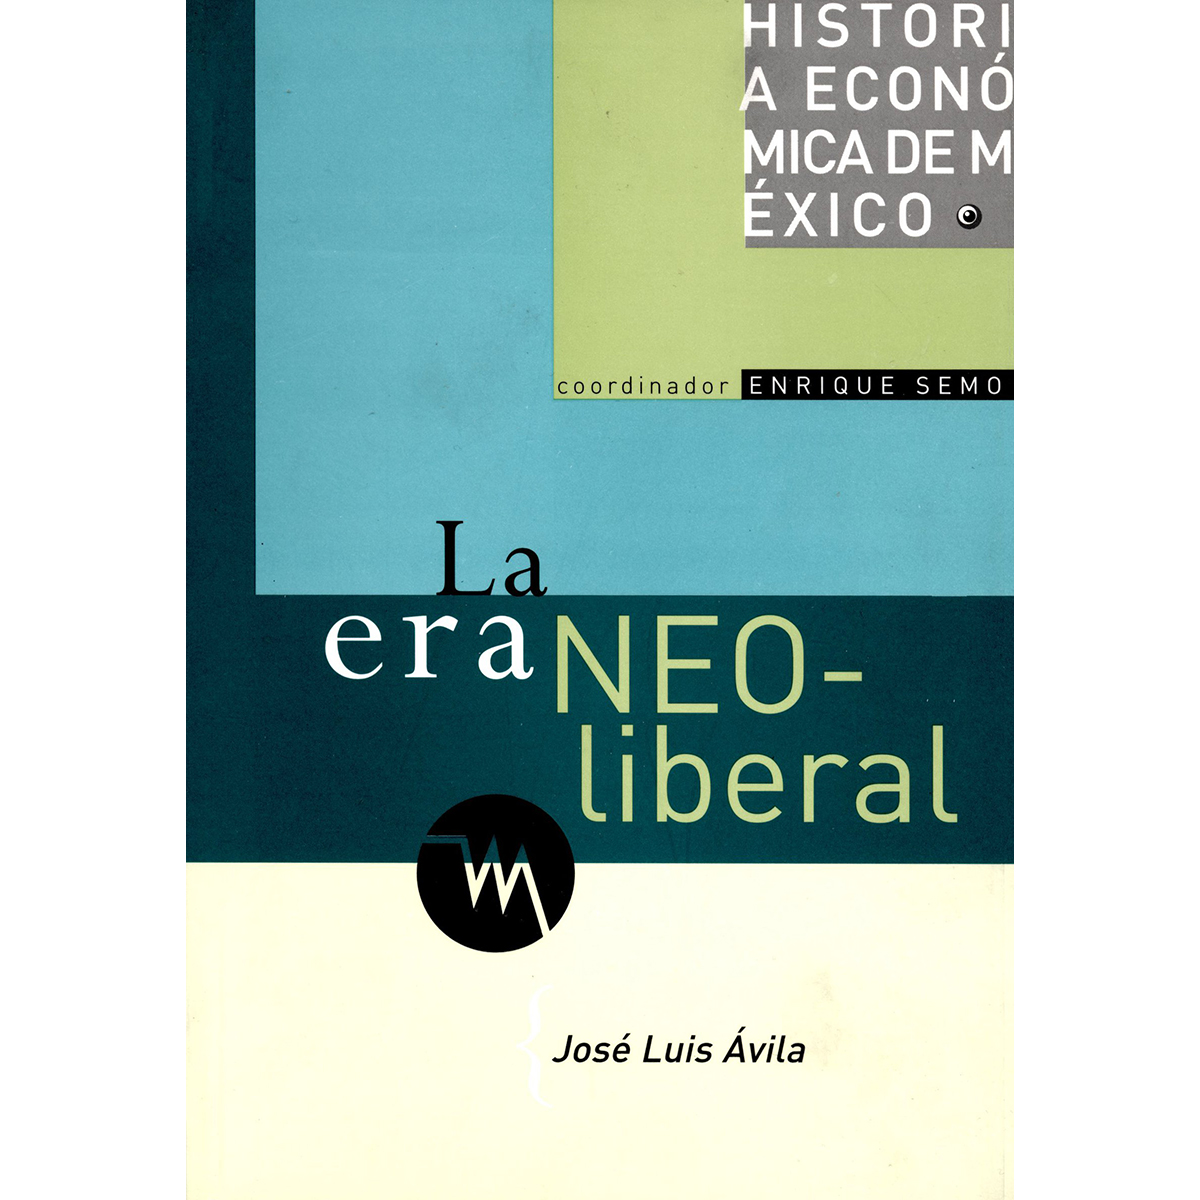 HISTORIA ECONÓMICA DE MÉXICO, VOL. 6. LA ERA NEOLIBERAL